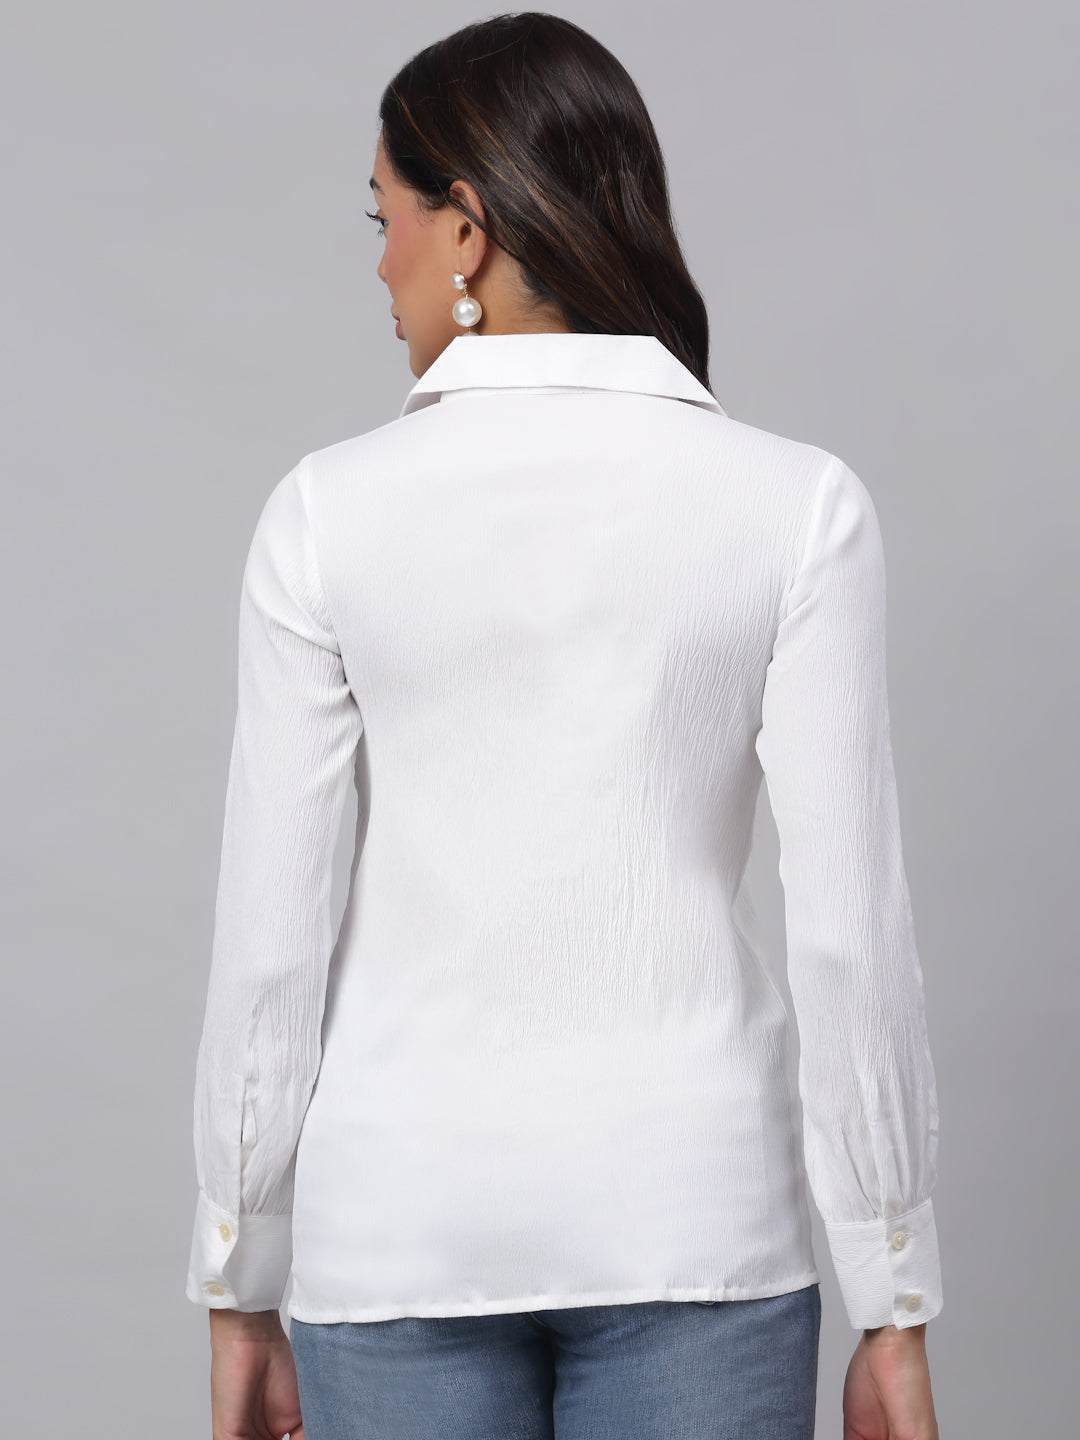 Jainish Women's White Solid Shirt - White - Distacart